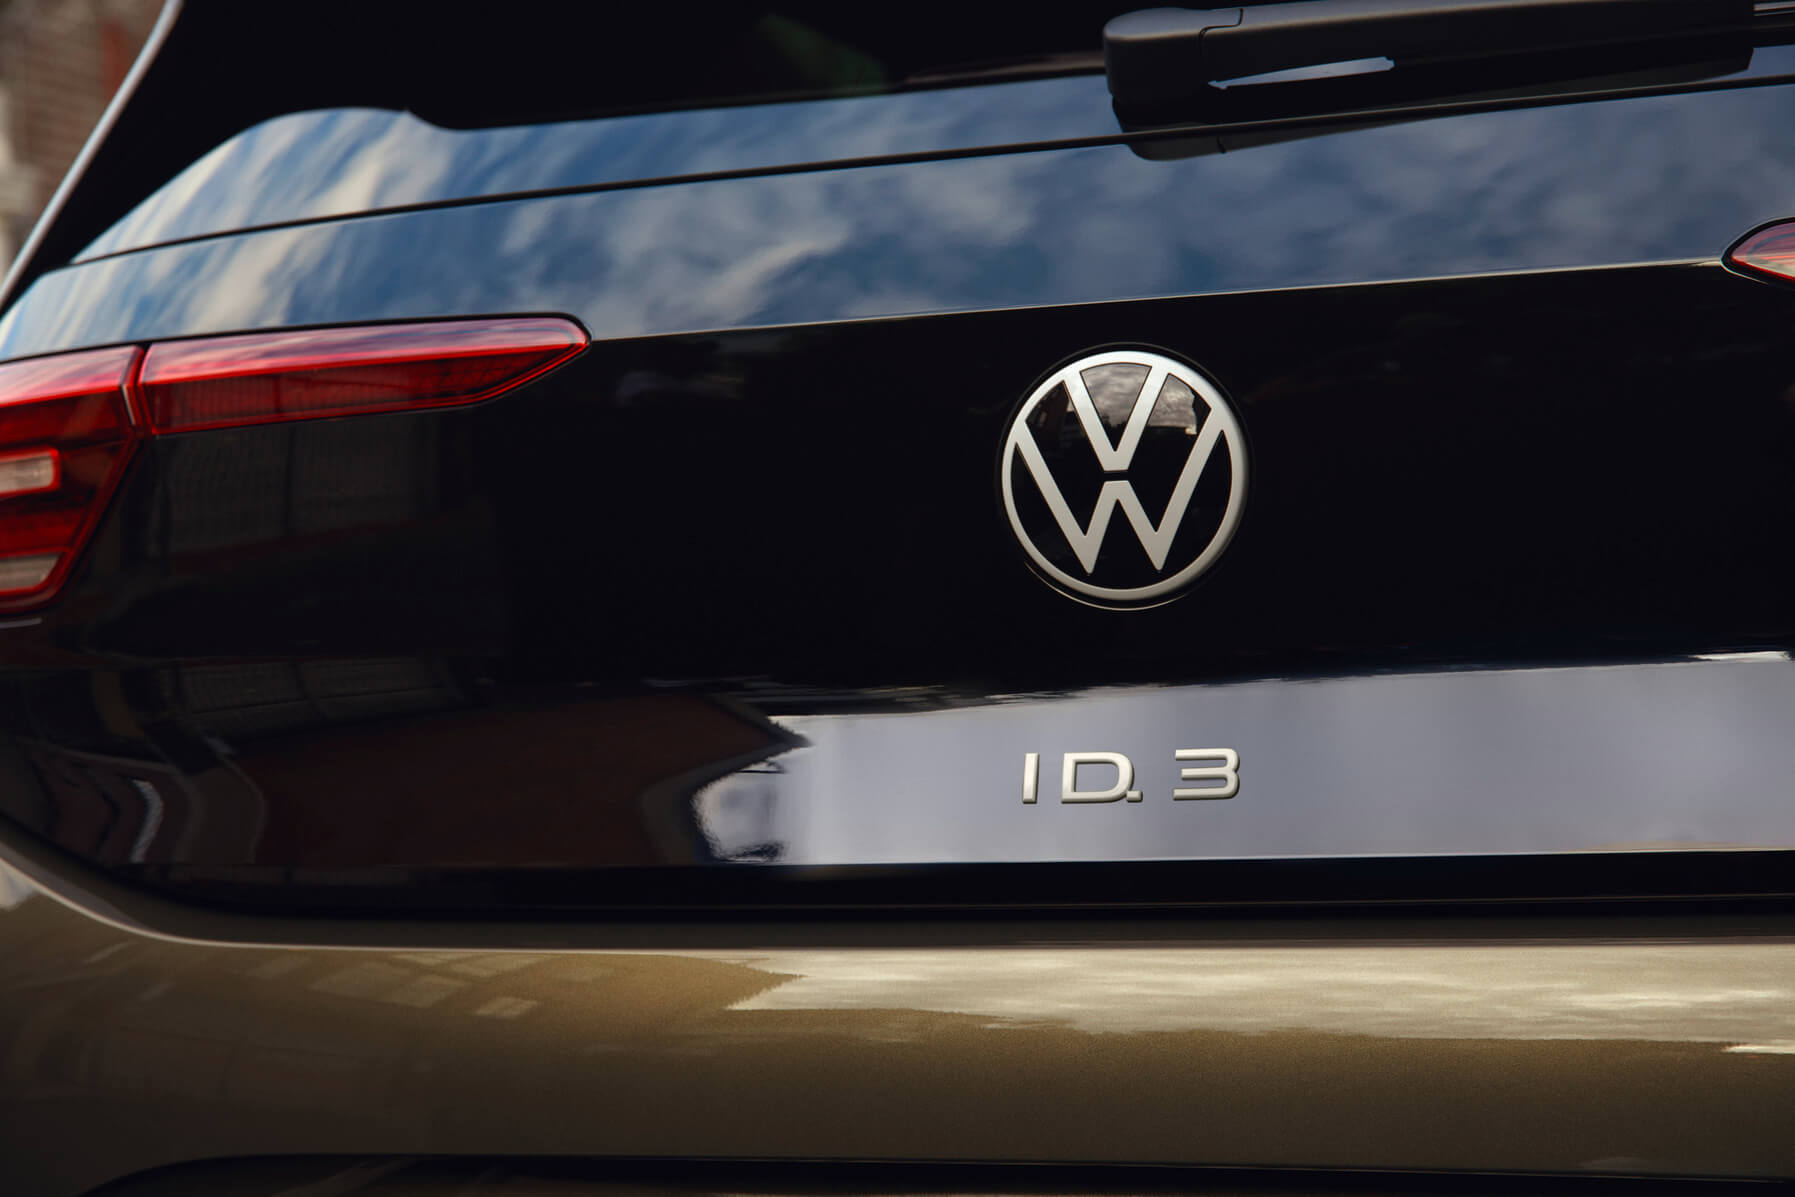 VW ने अगली-पीढ़ी की ID.3 का खुलासा किया, बड़े पैमाने पर ग्राहक-केंद्रित सुधार लाता है